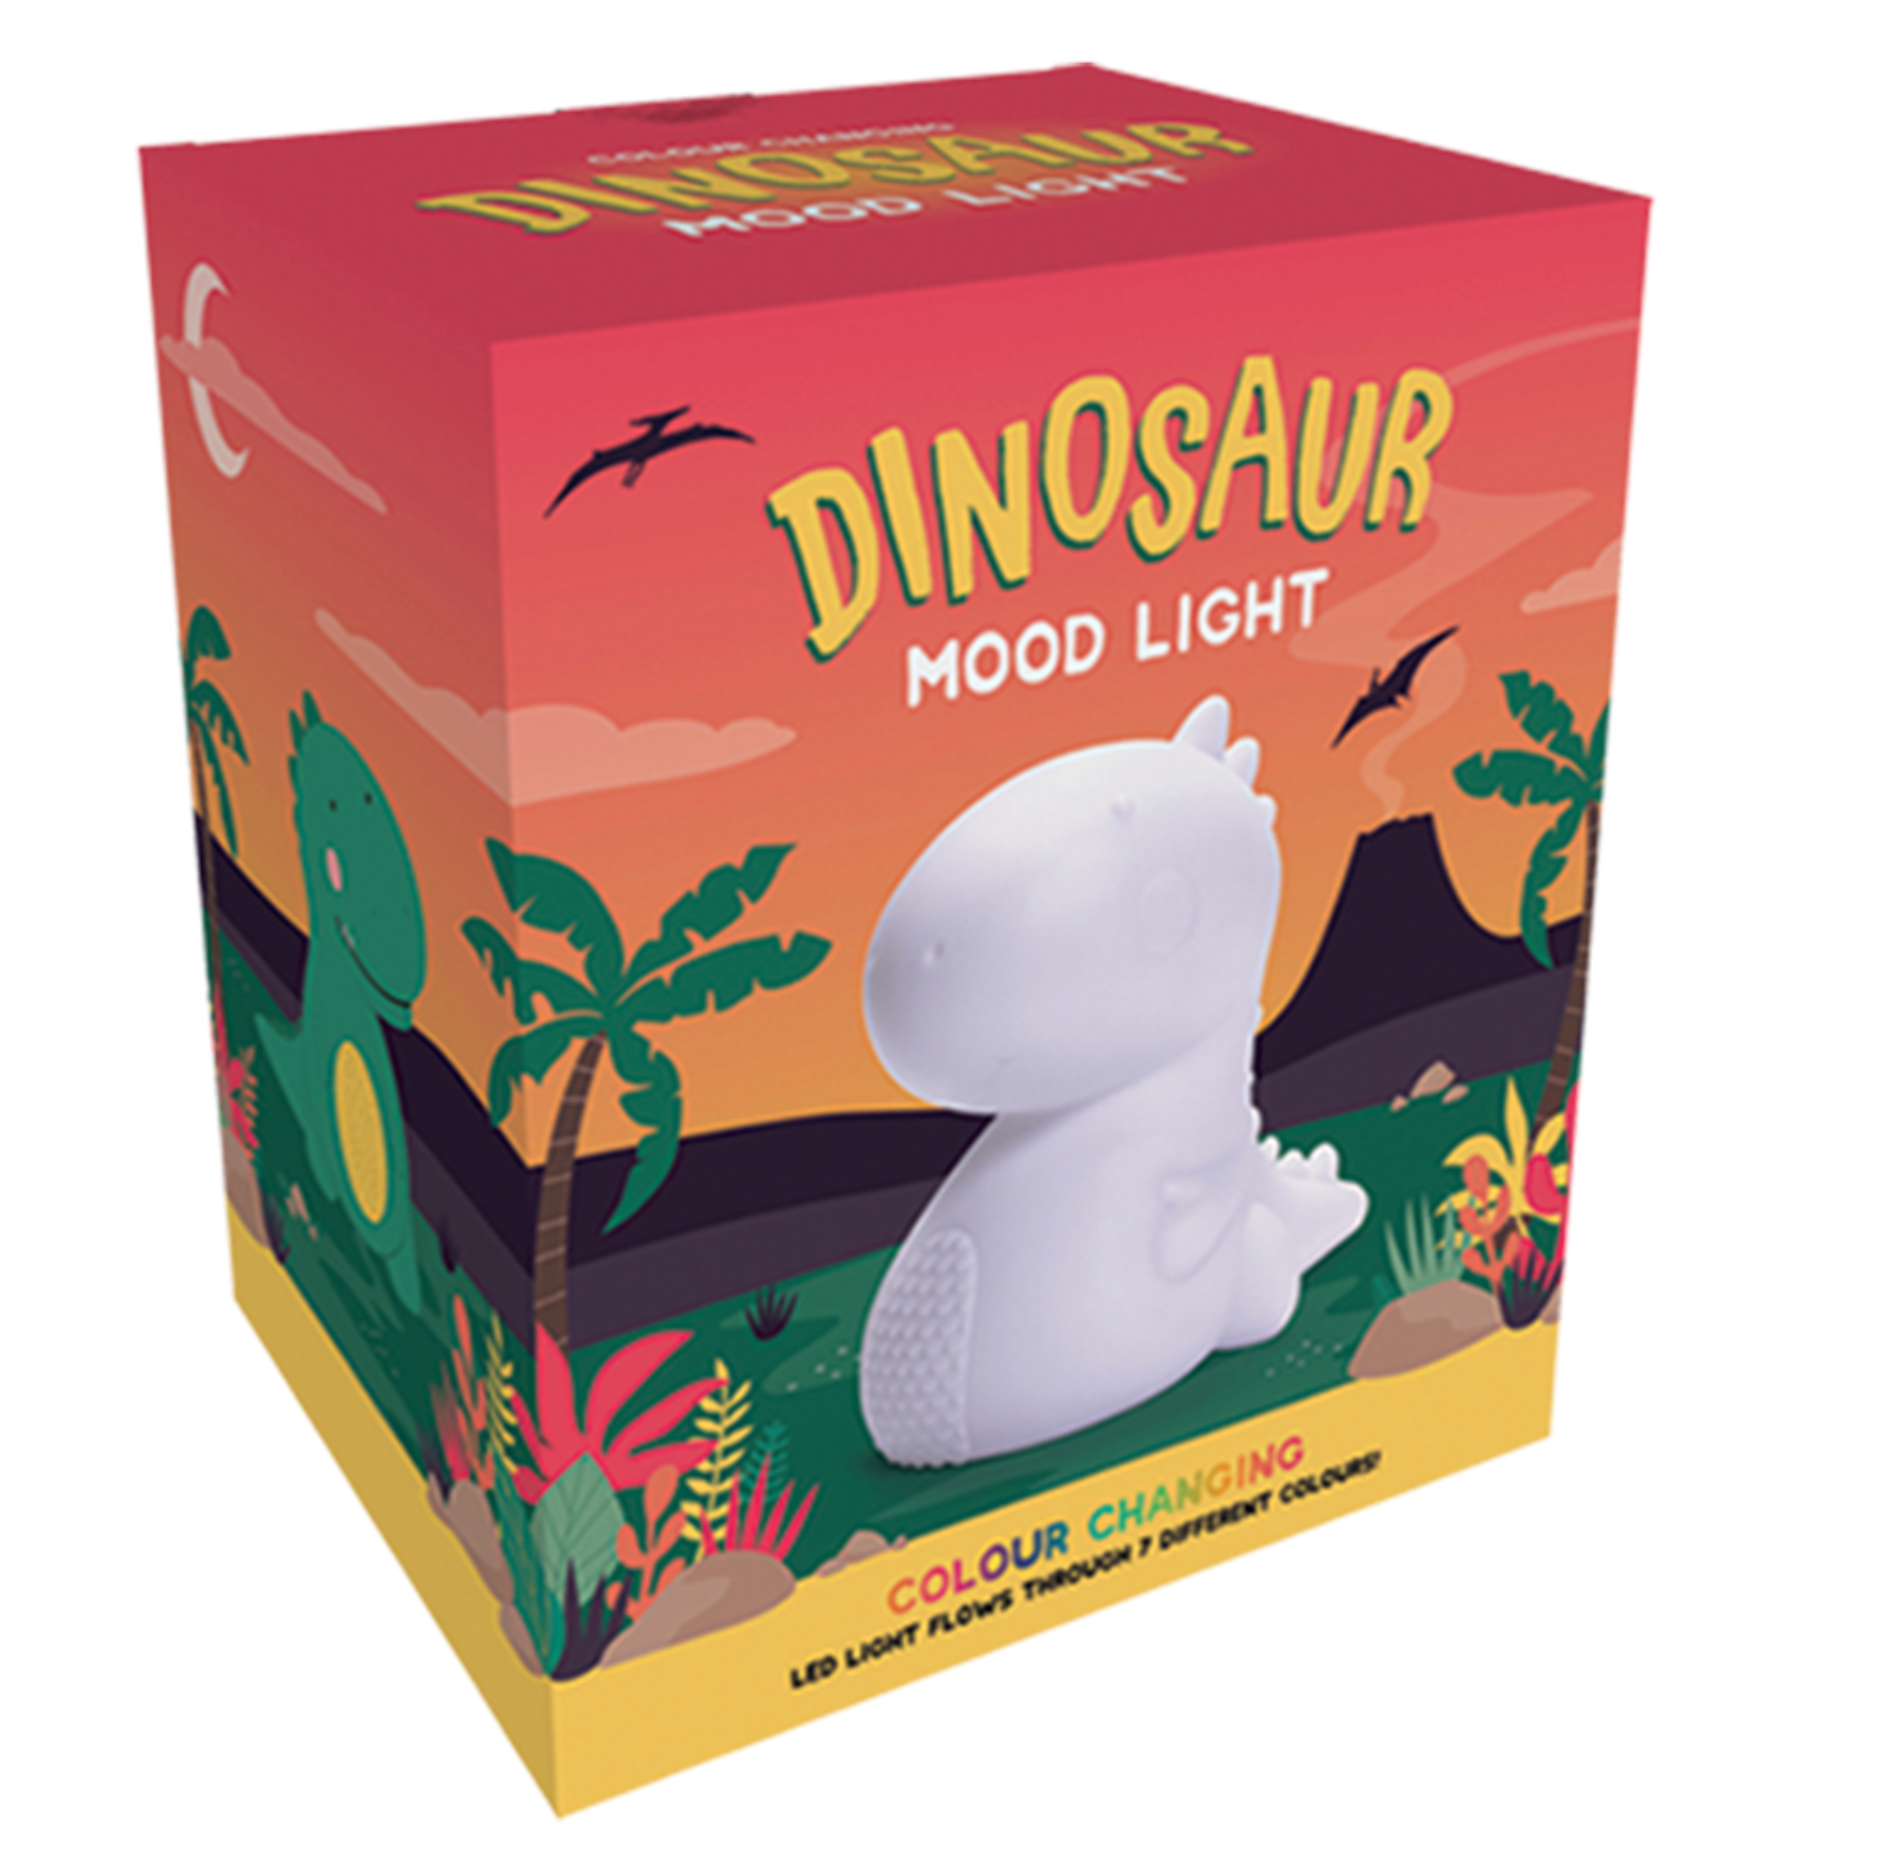 Giant Dinosaur Mood Light